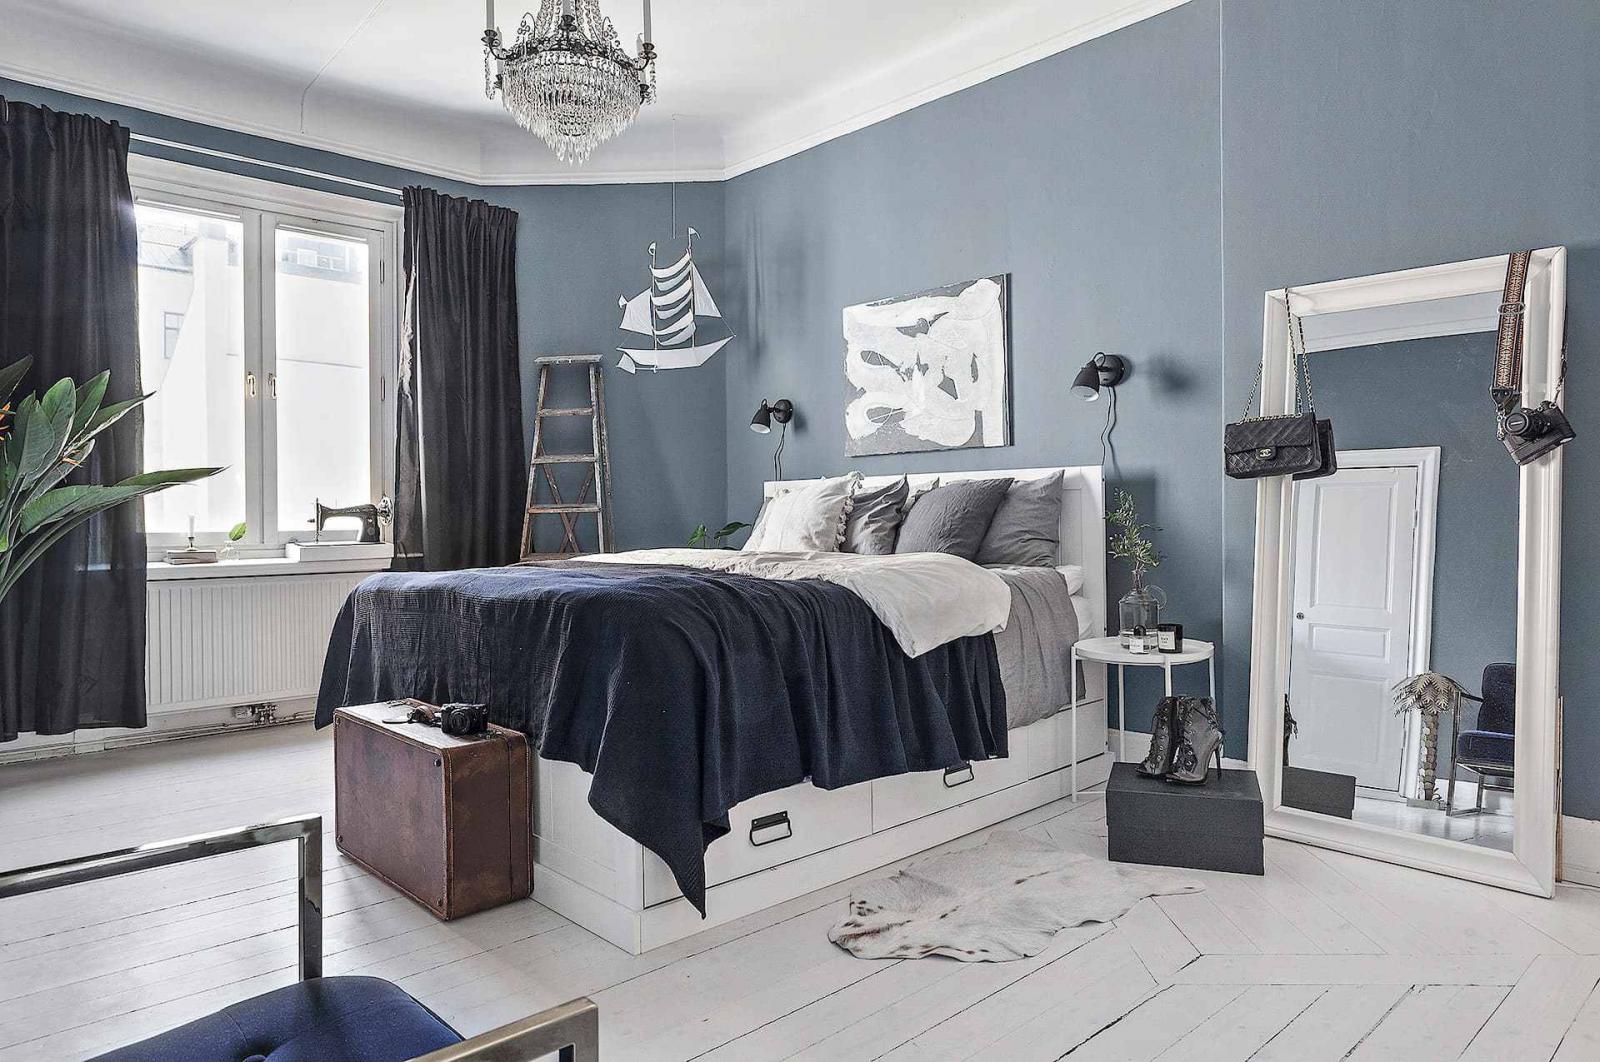 Hình ảnh phòng ngủ rộng rãi với giường nệm êm ái, gương lớn, cửa sổ kính, máy khâu, rèm màu xanh than, tường sơn xanh